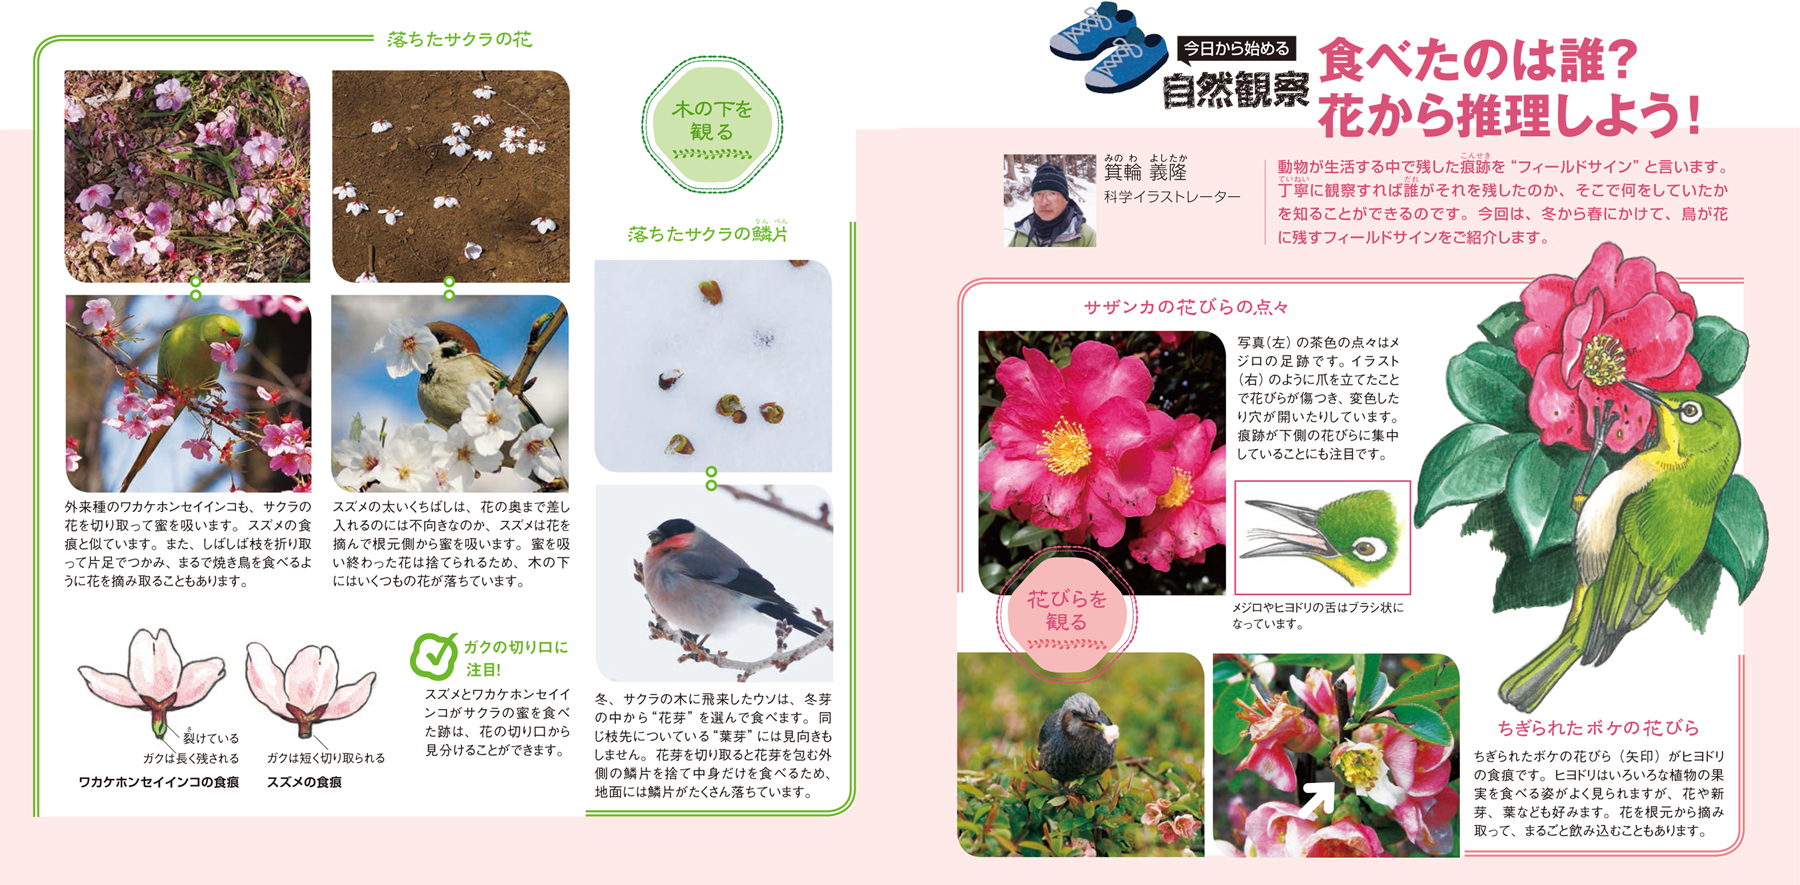 配布資料 今日からはじめる自然観察 食べたのは誰 花から推理しよう 日本自然保護協会オフィシャルサイト